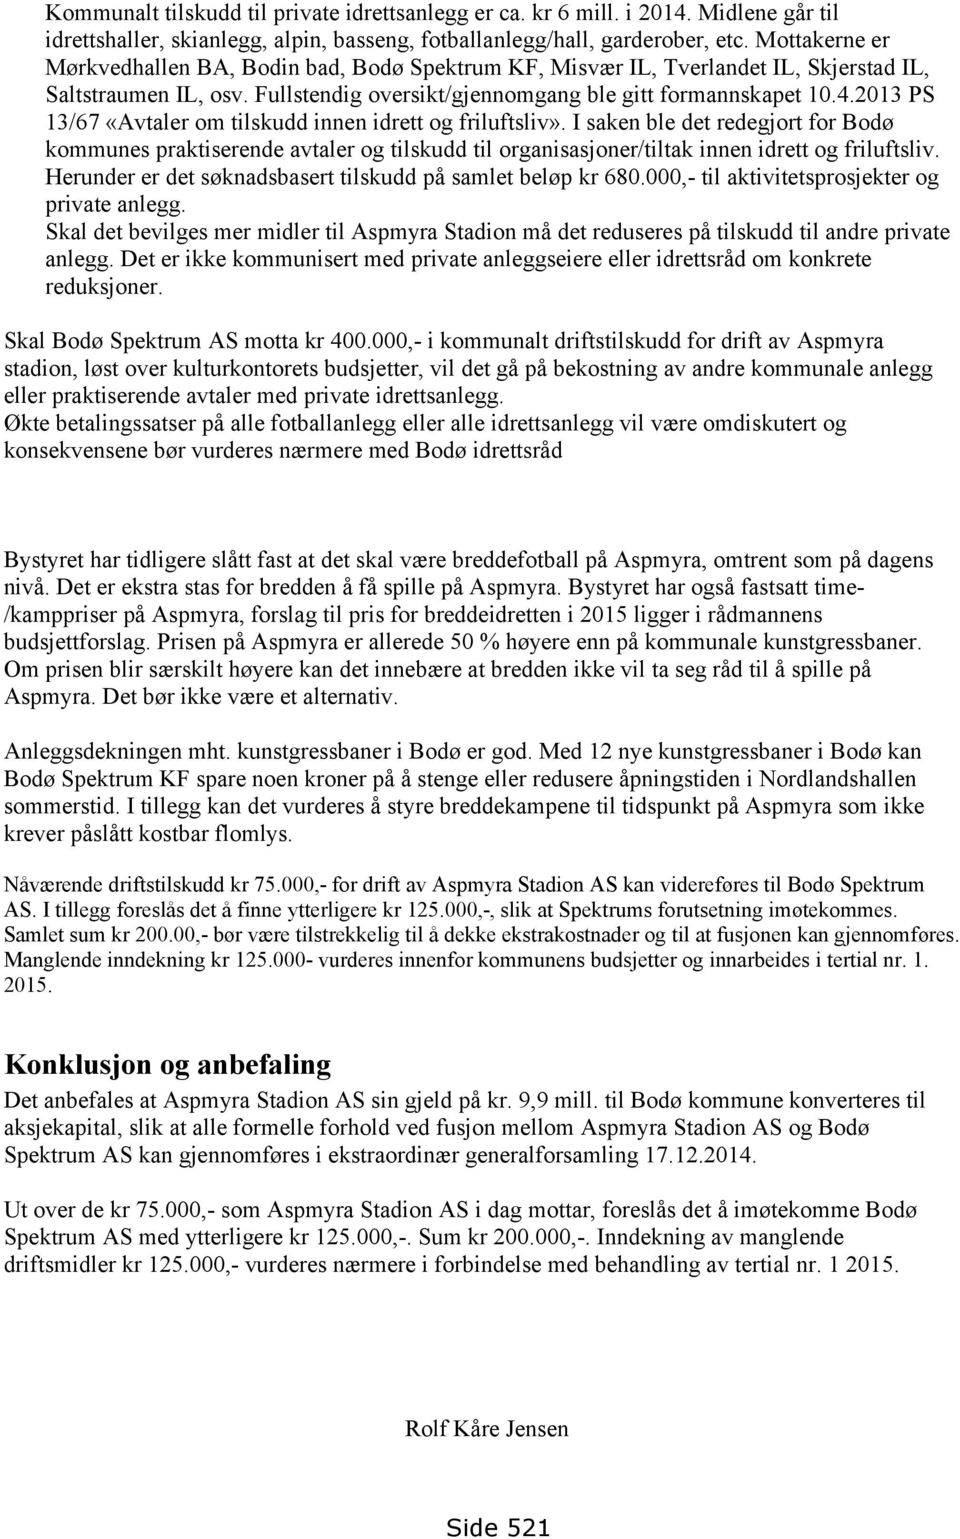 2013 PS 13/67 «Avtaler om tilskudd innen idrett og friluftsliv». I saken ble det redegjort for Bodø kommunes praktiserende avtaler og tilskudd til organisasjoner/tiltak innen idrett og friluftsliv.